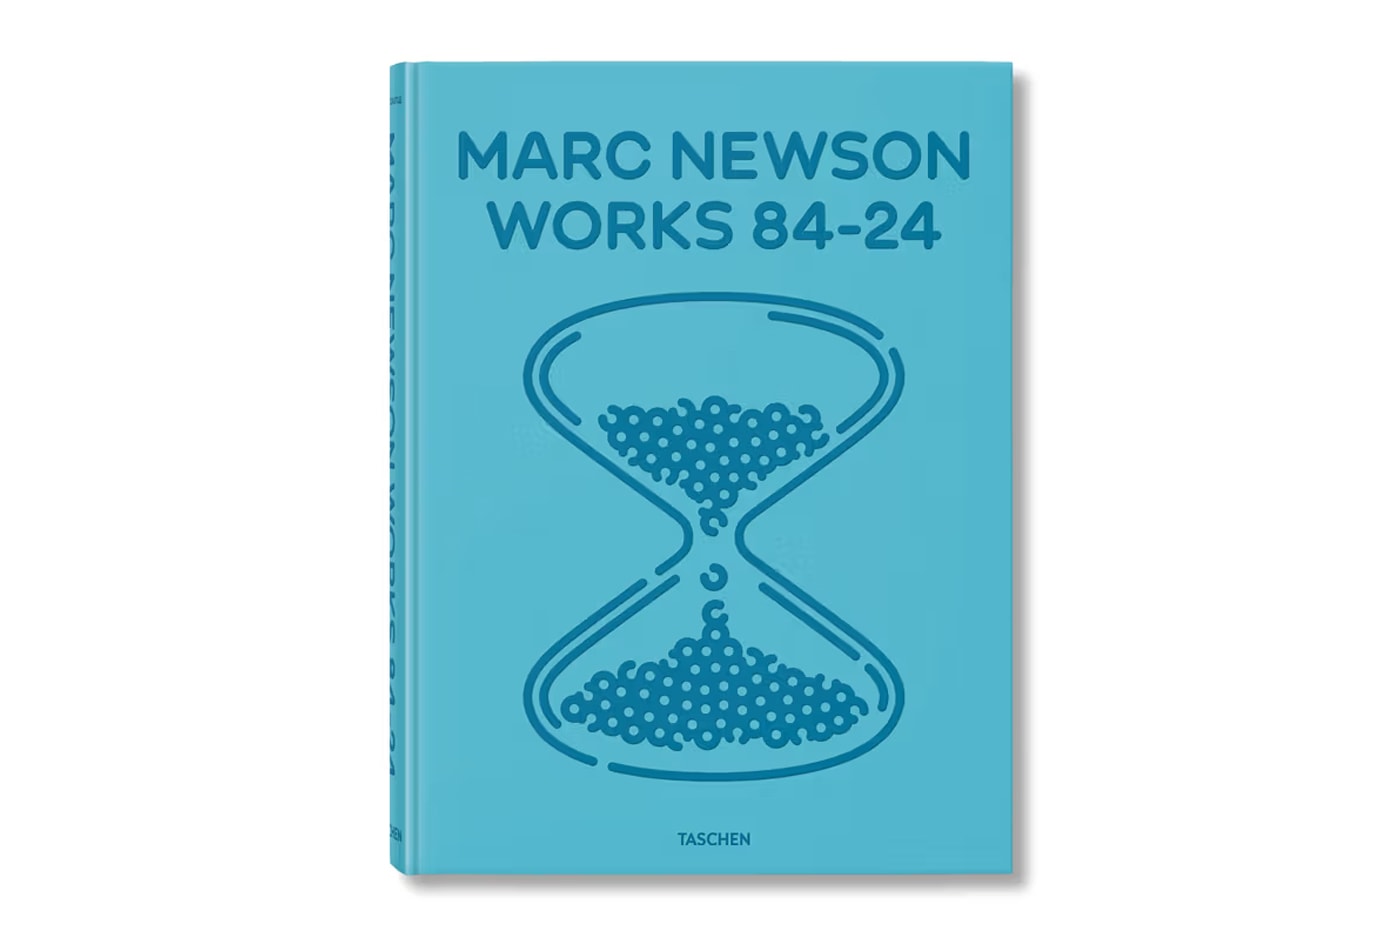 Ташен Марк Ньюсон, британский дизайнер, томная книга, промышленная продукция, редактор Элисон Касл, предварительный заказ, детали предварительного просмотра